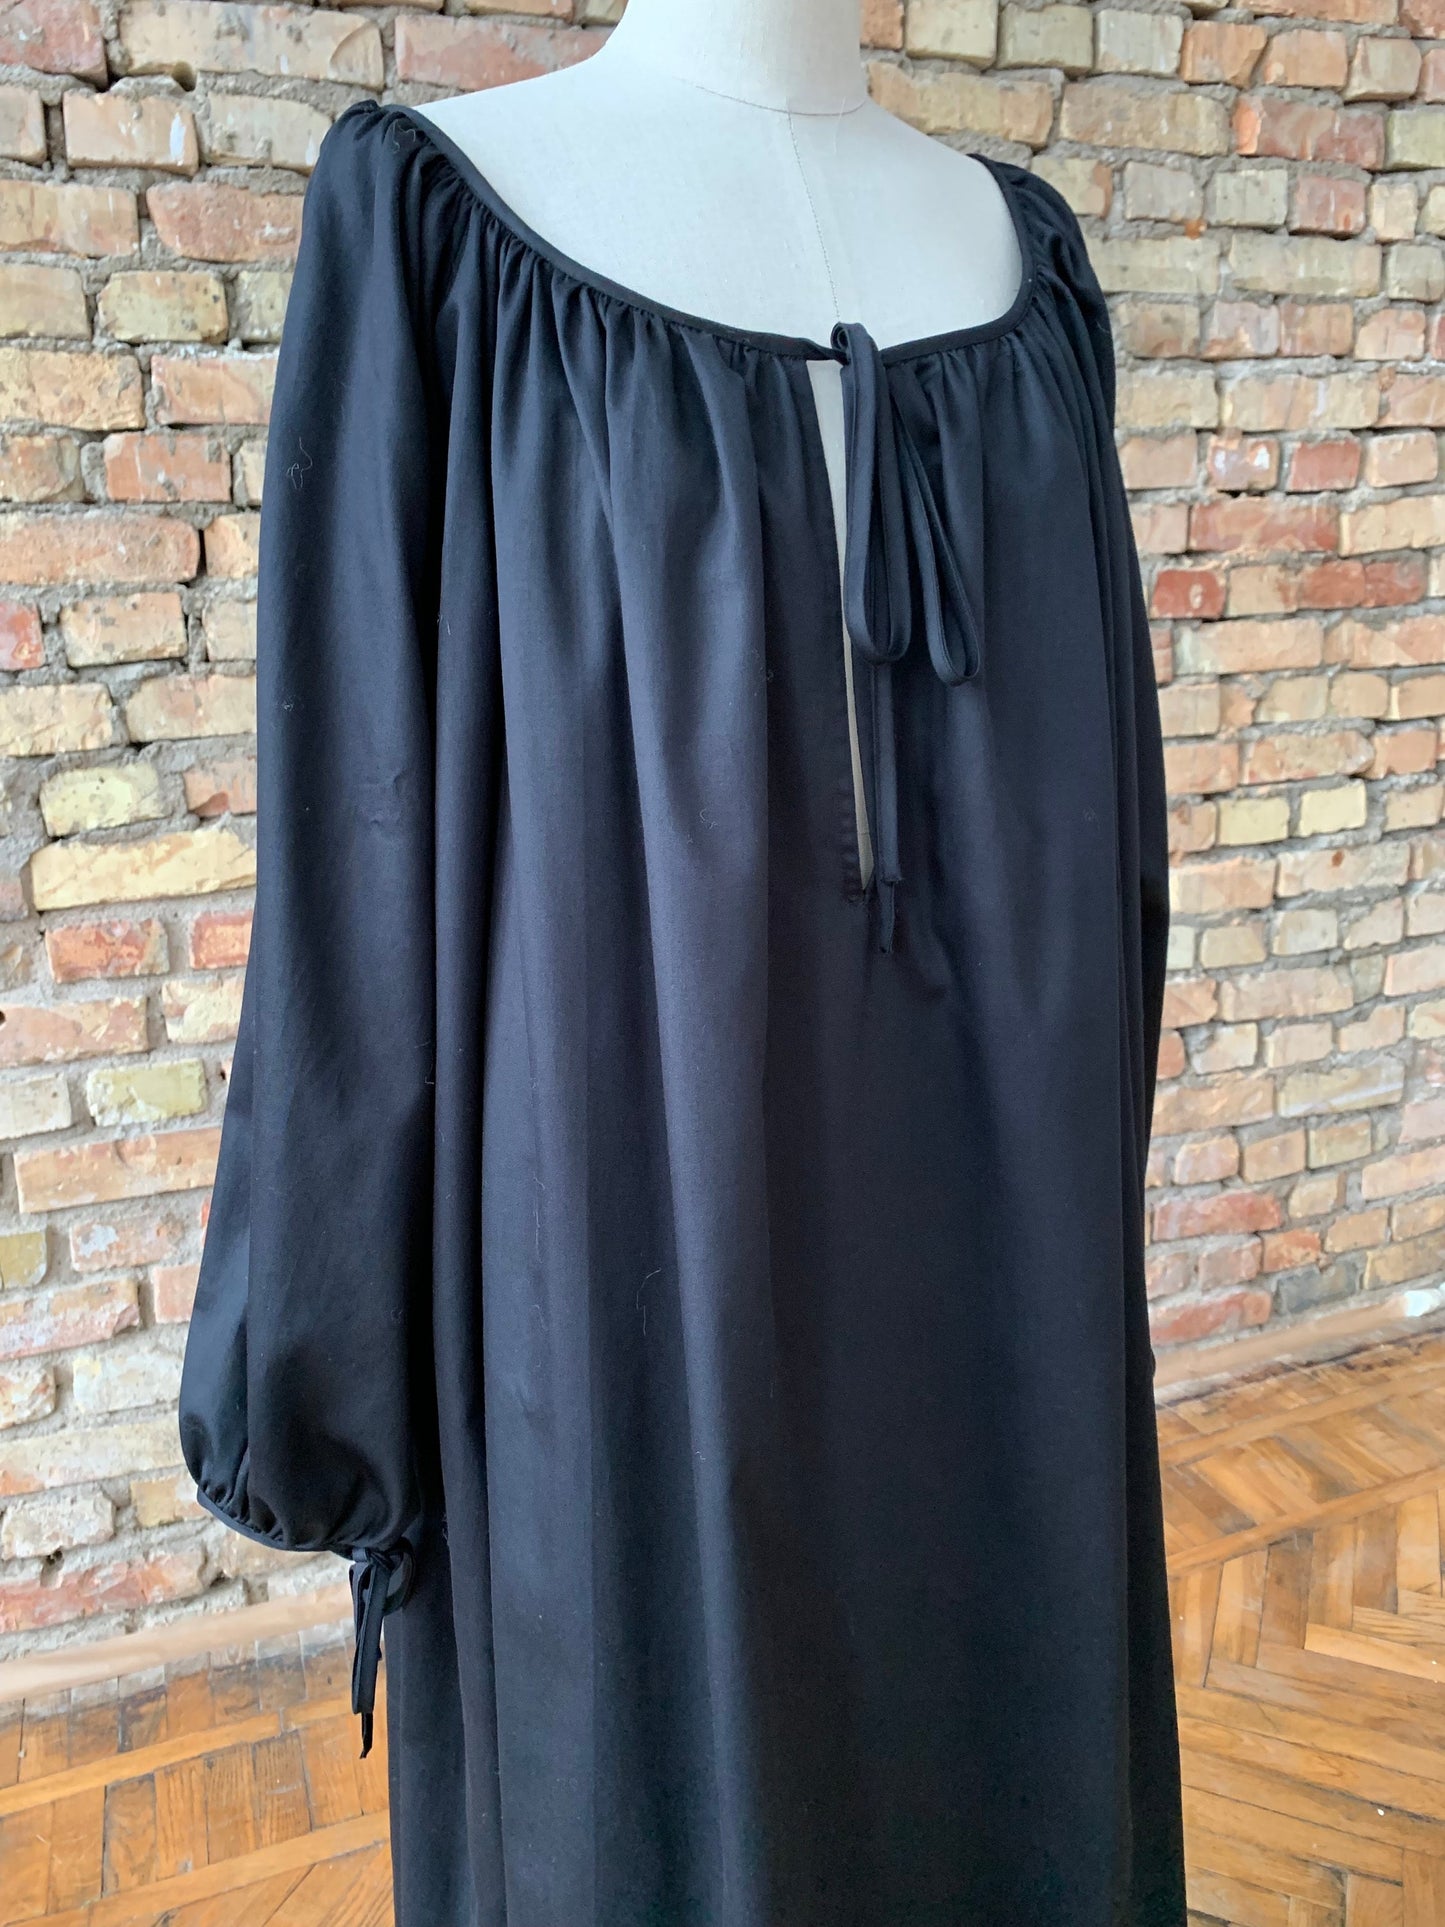 Milda Gown in Black Cotton